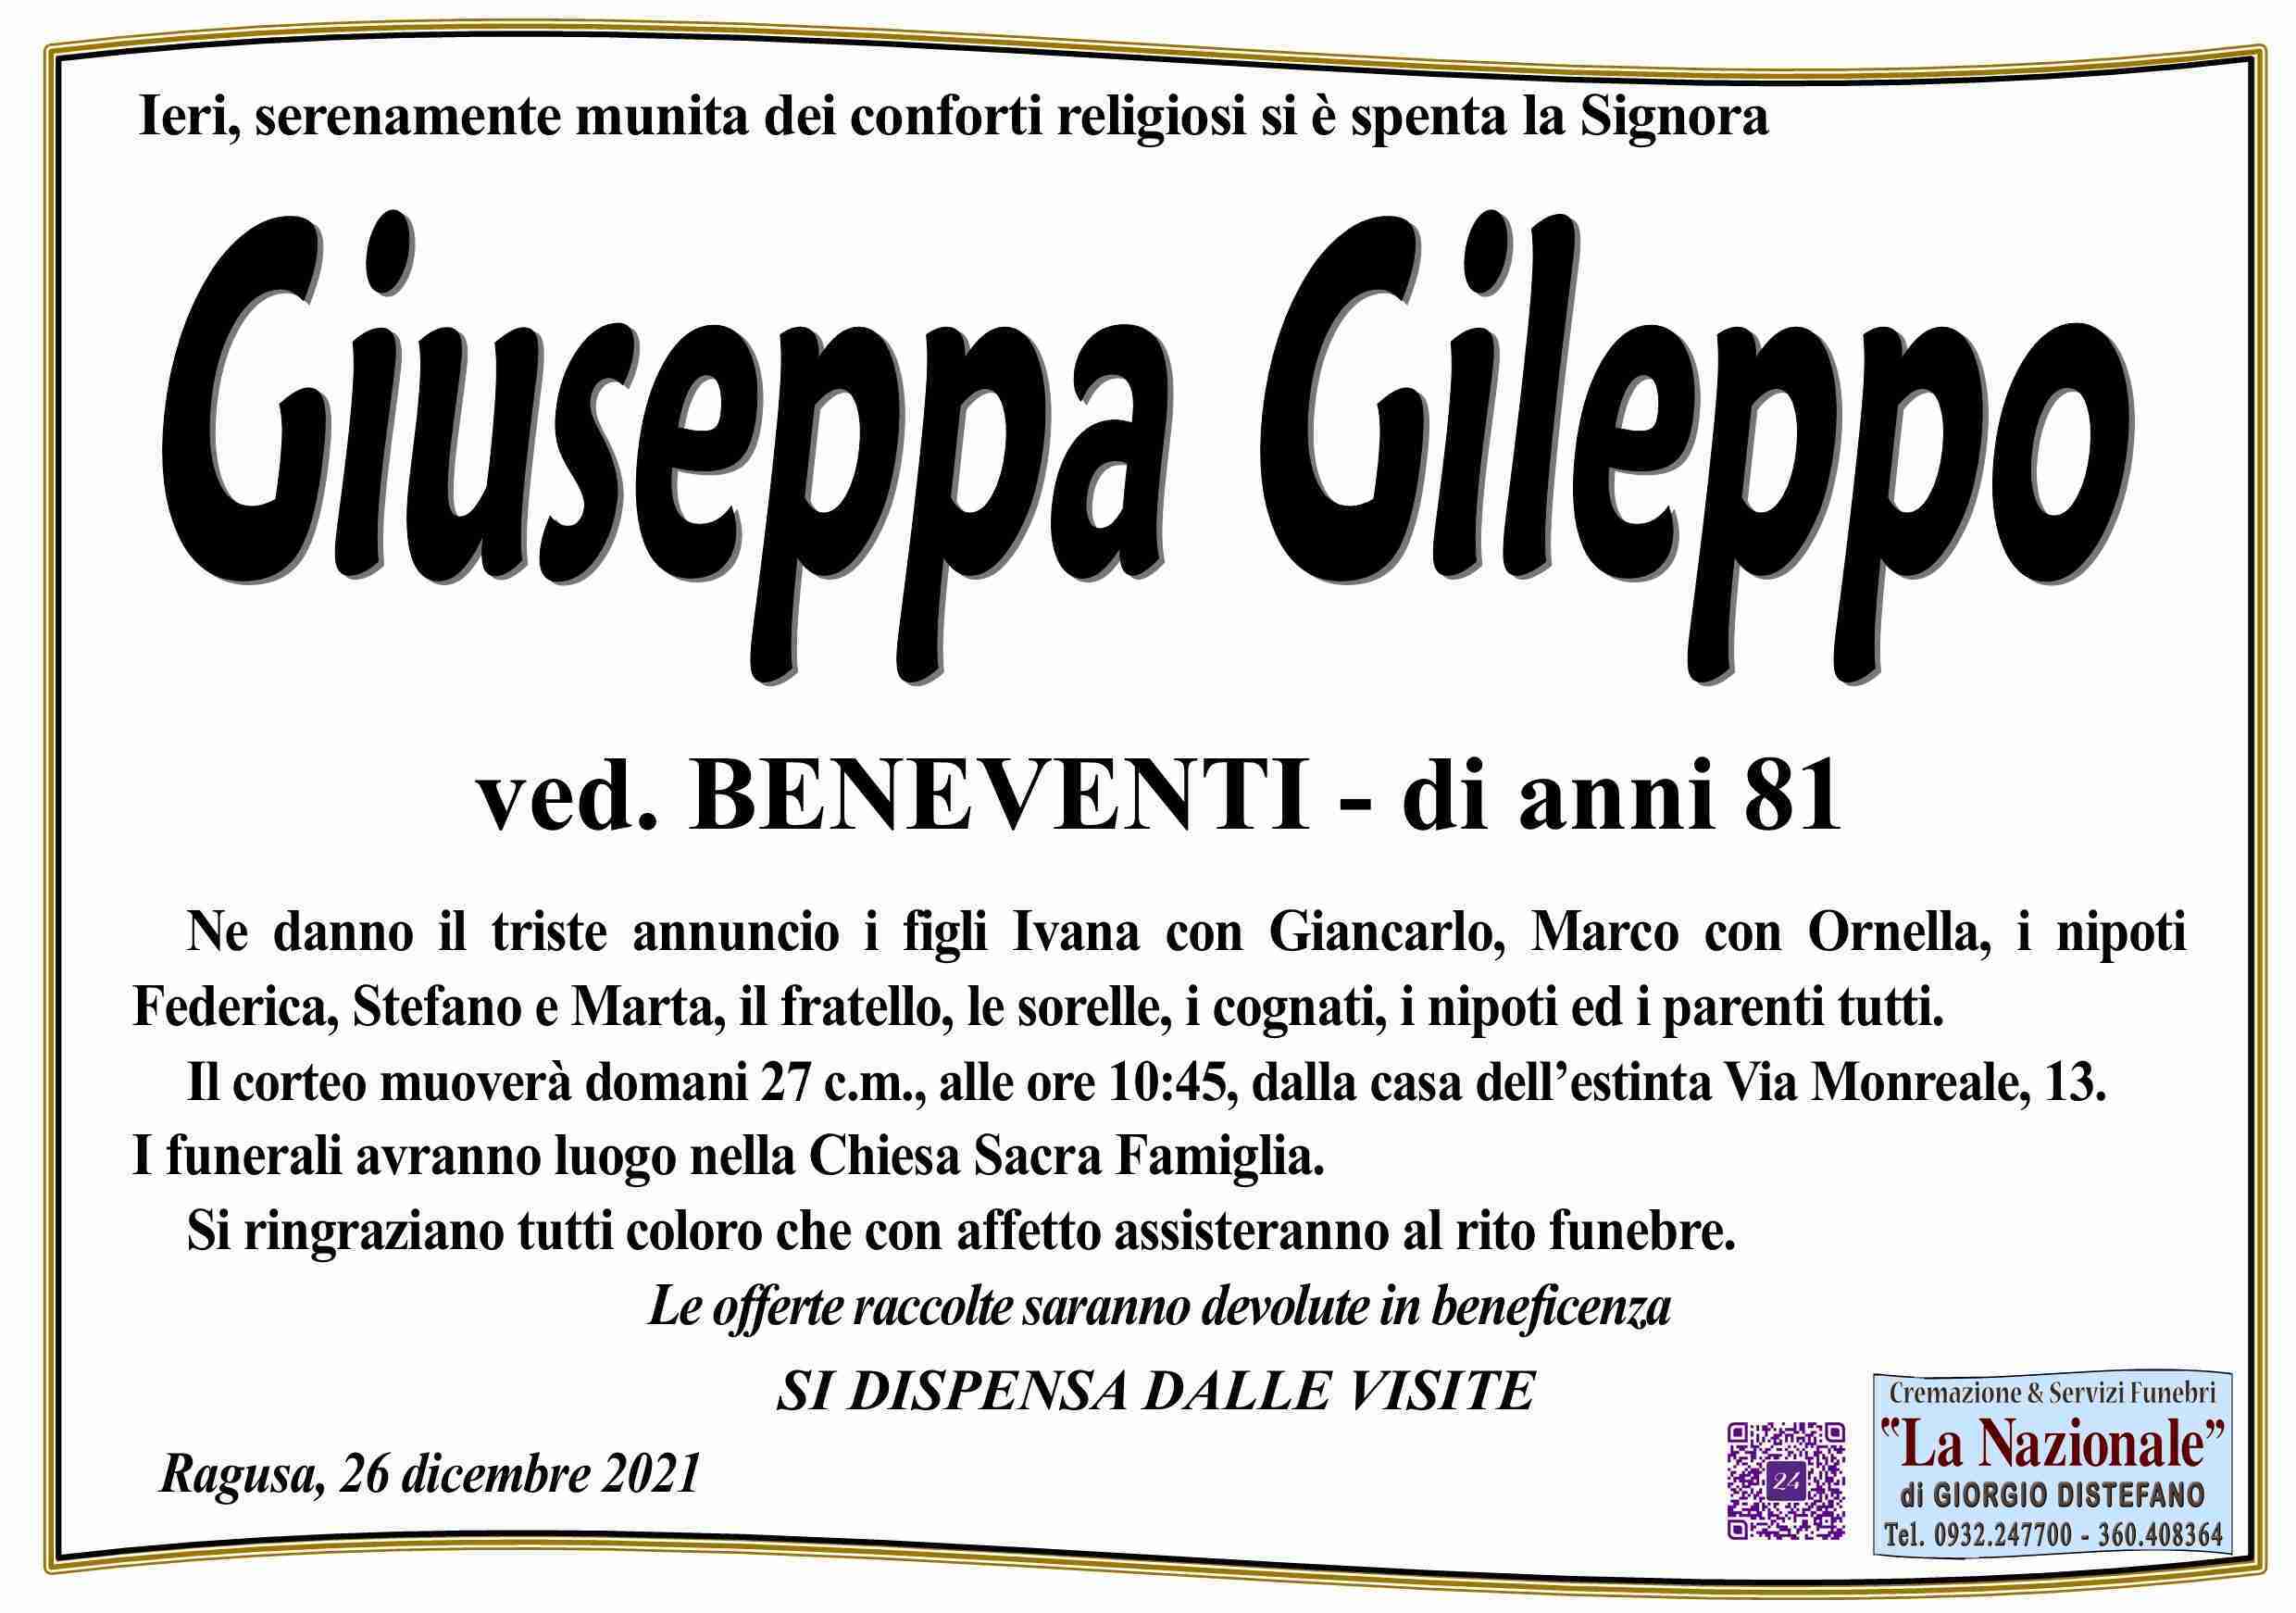 Giuseppa Gileppo